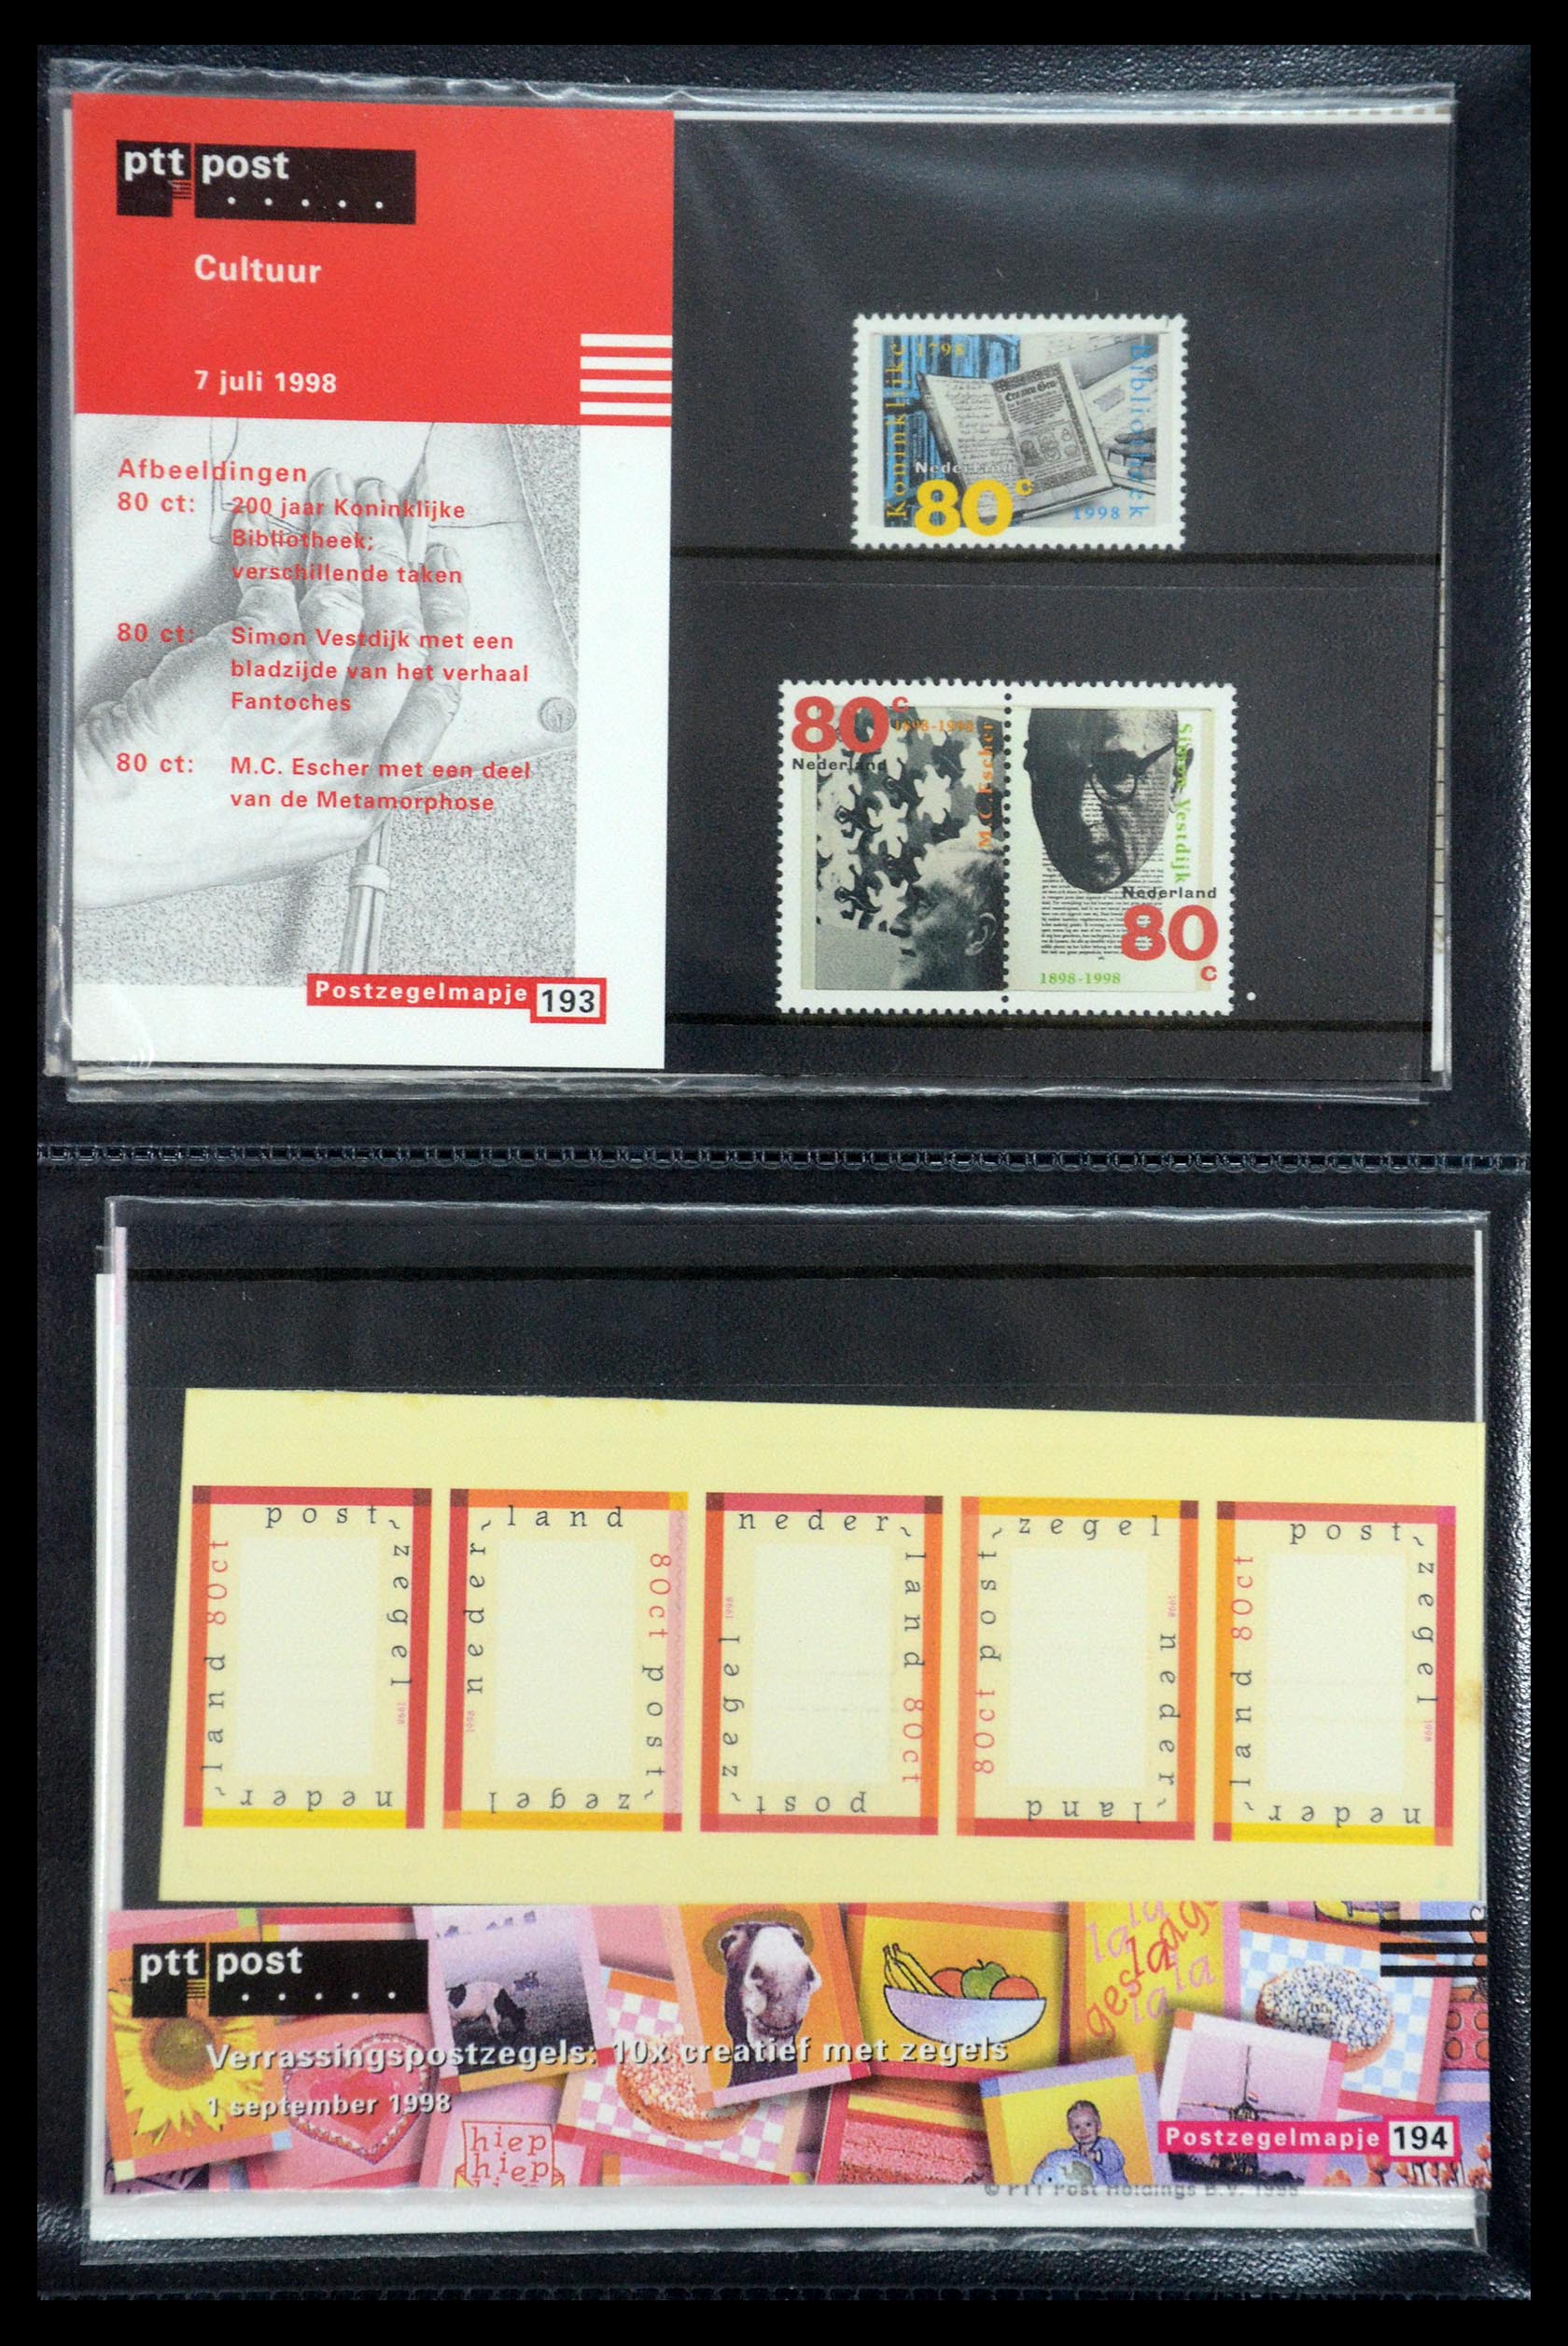 35187 099 - Stamp Collection 35187 Netherlands PTT presentation packs 1982-2019!